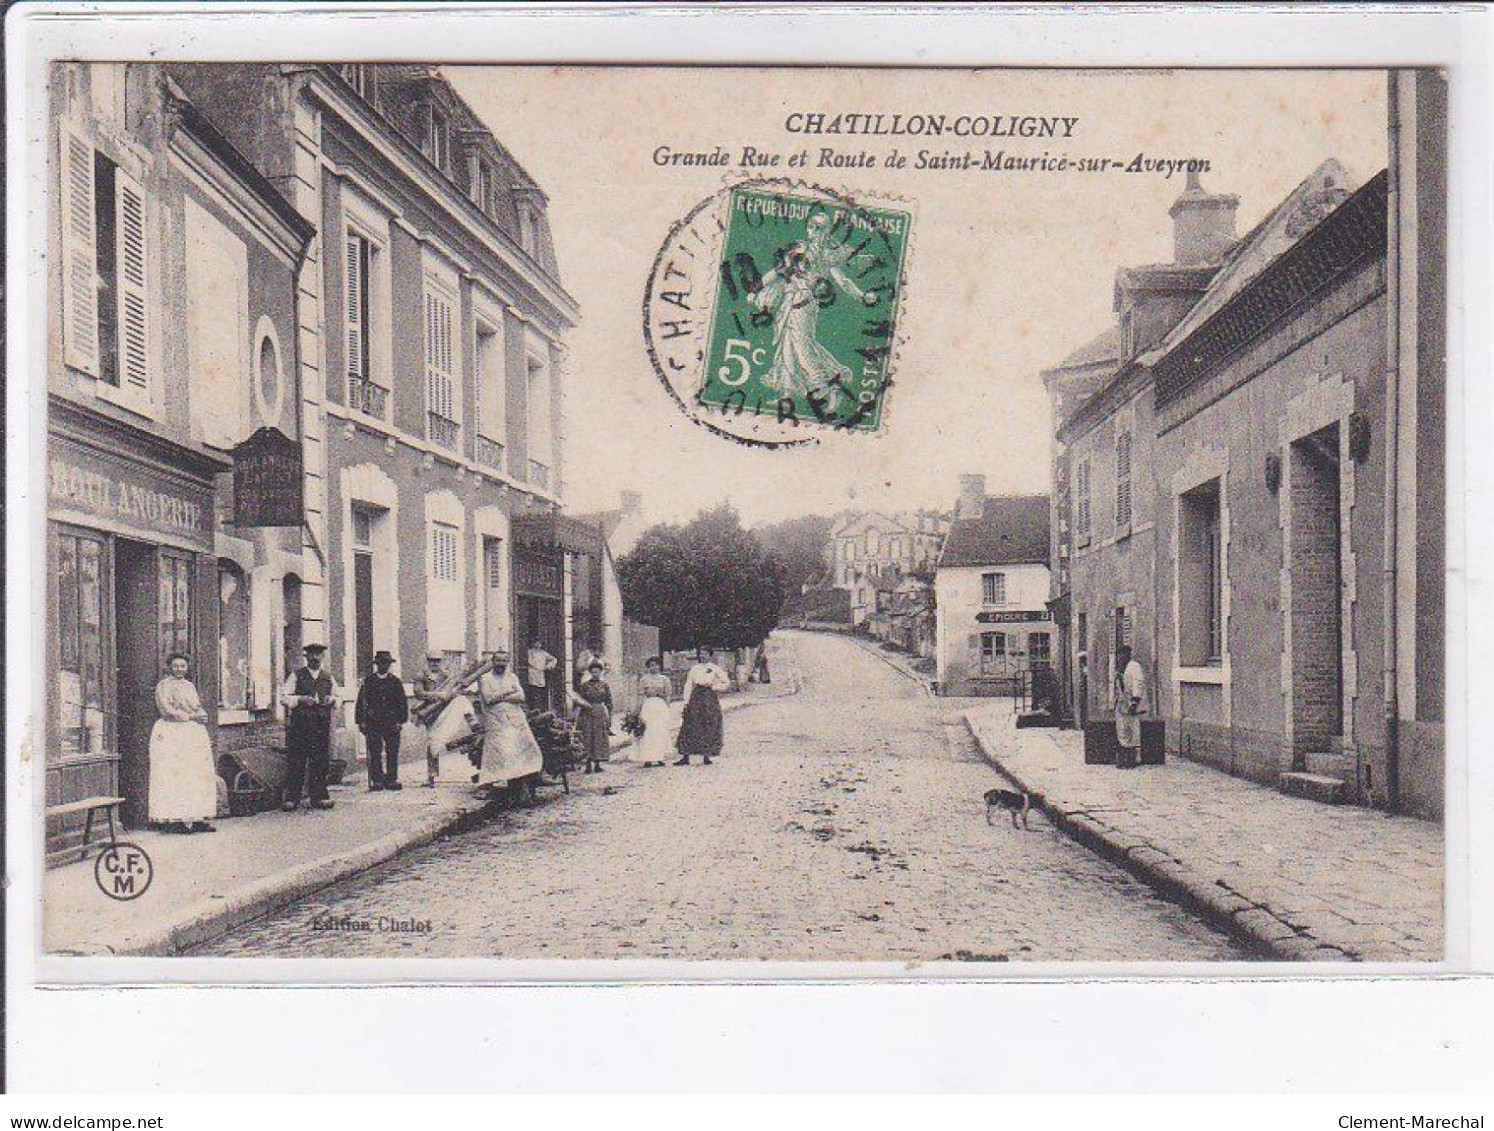 CHATILLON-COLILGNY: Grande Rue Et Route De Saint-maurice-sur-aveyron - état - Chatillon Coligny